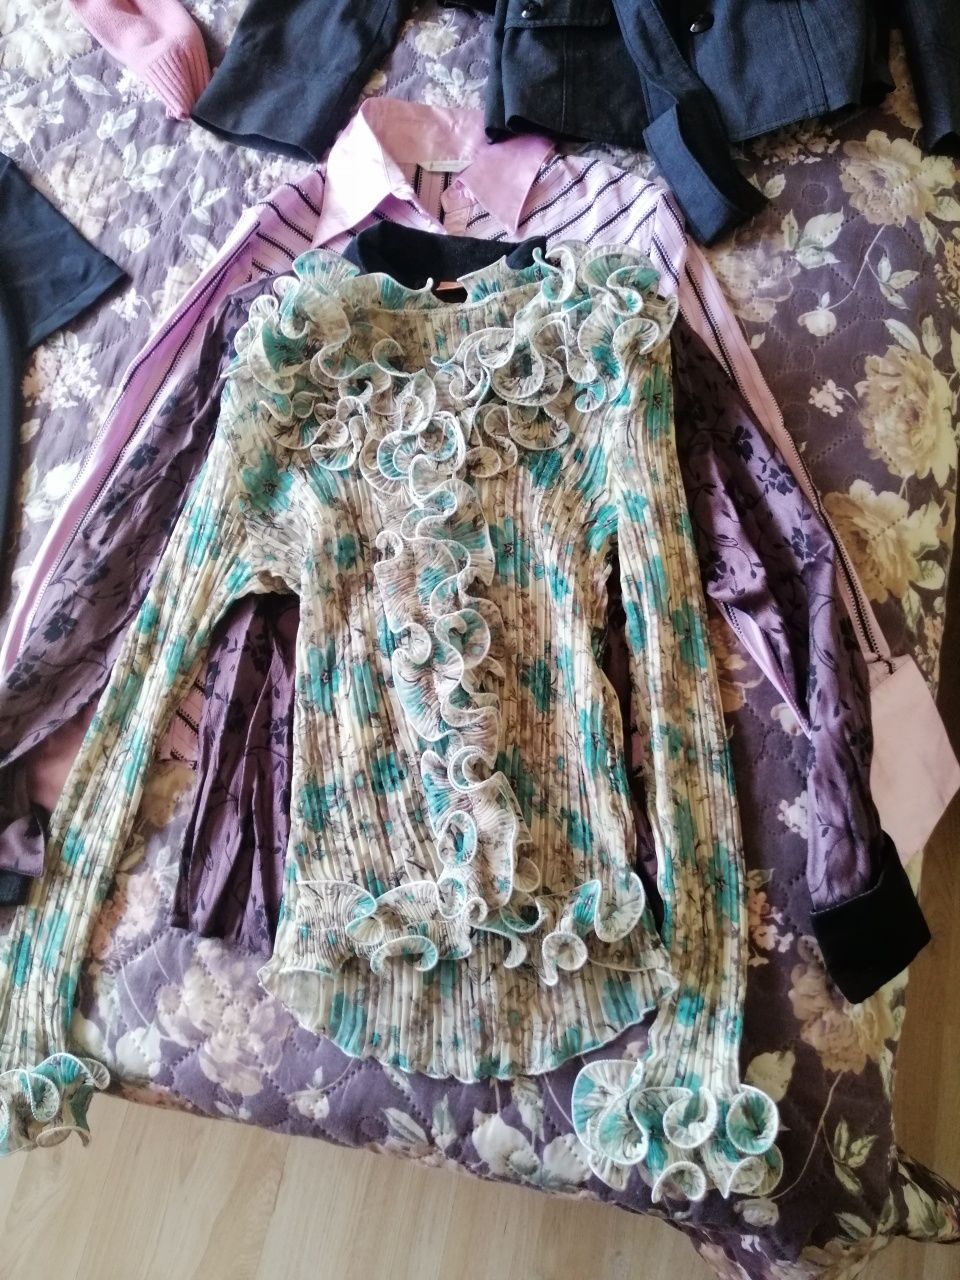 Дамски сака, блузи, шлифери. Цена за брой.